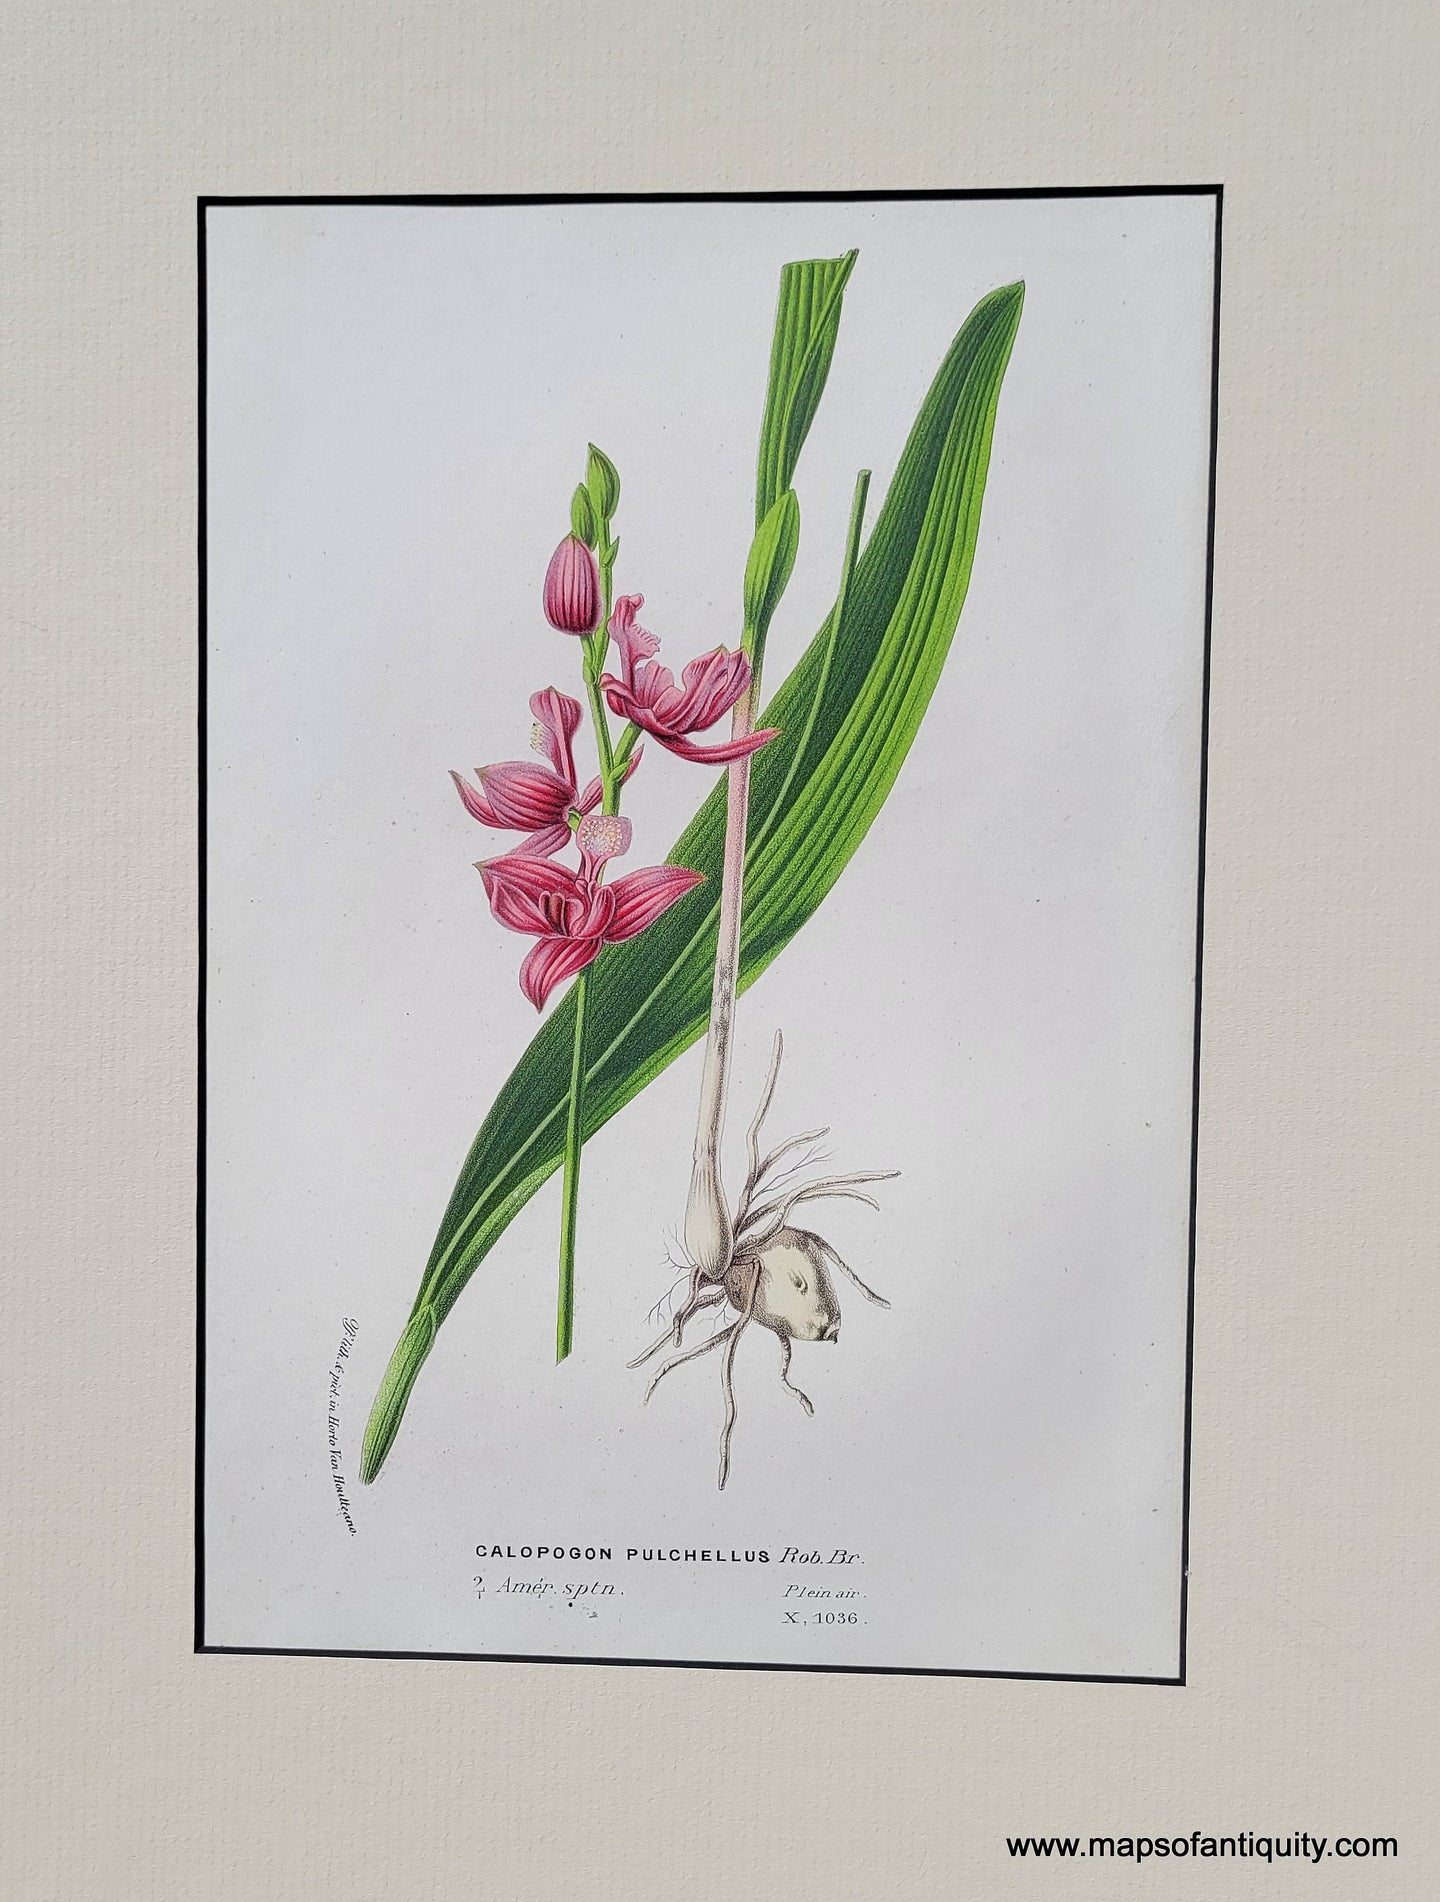 Genuine-Antique-Print-Orchid-Calapogon-pulchellus-1850-Van-Houtte-Maps-Of-Antiquity